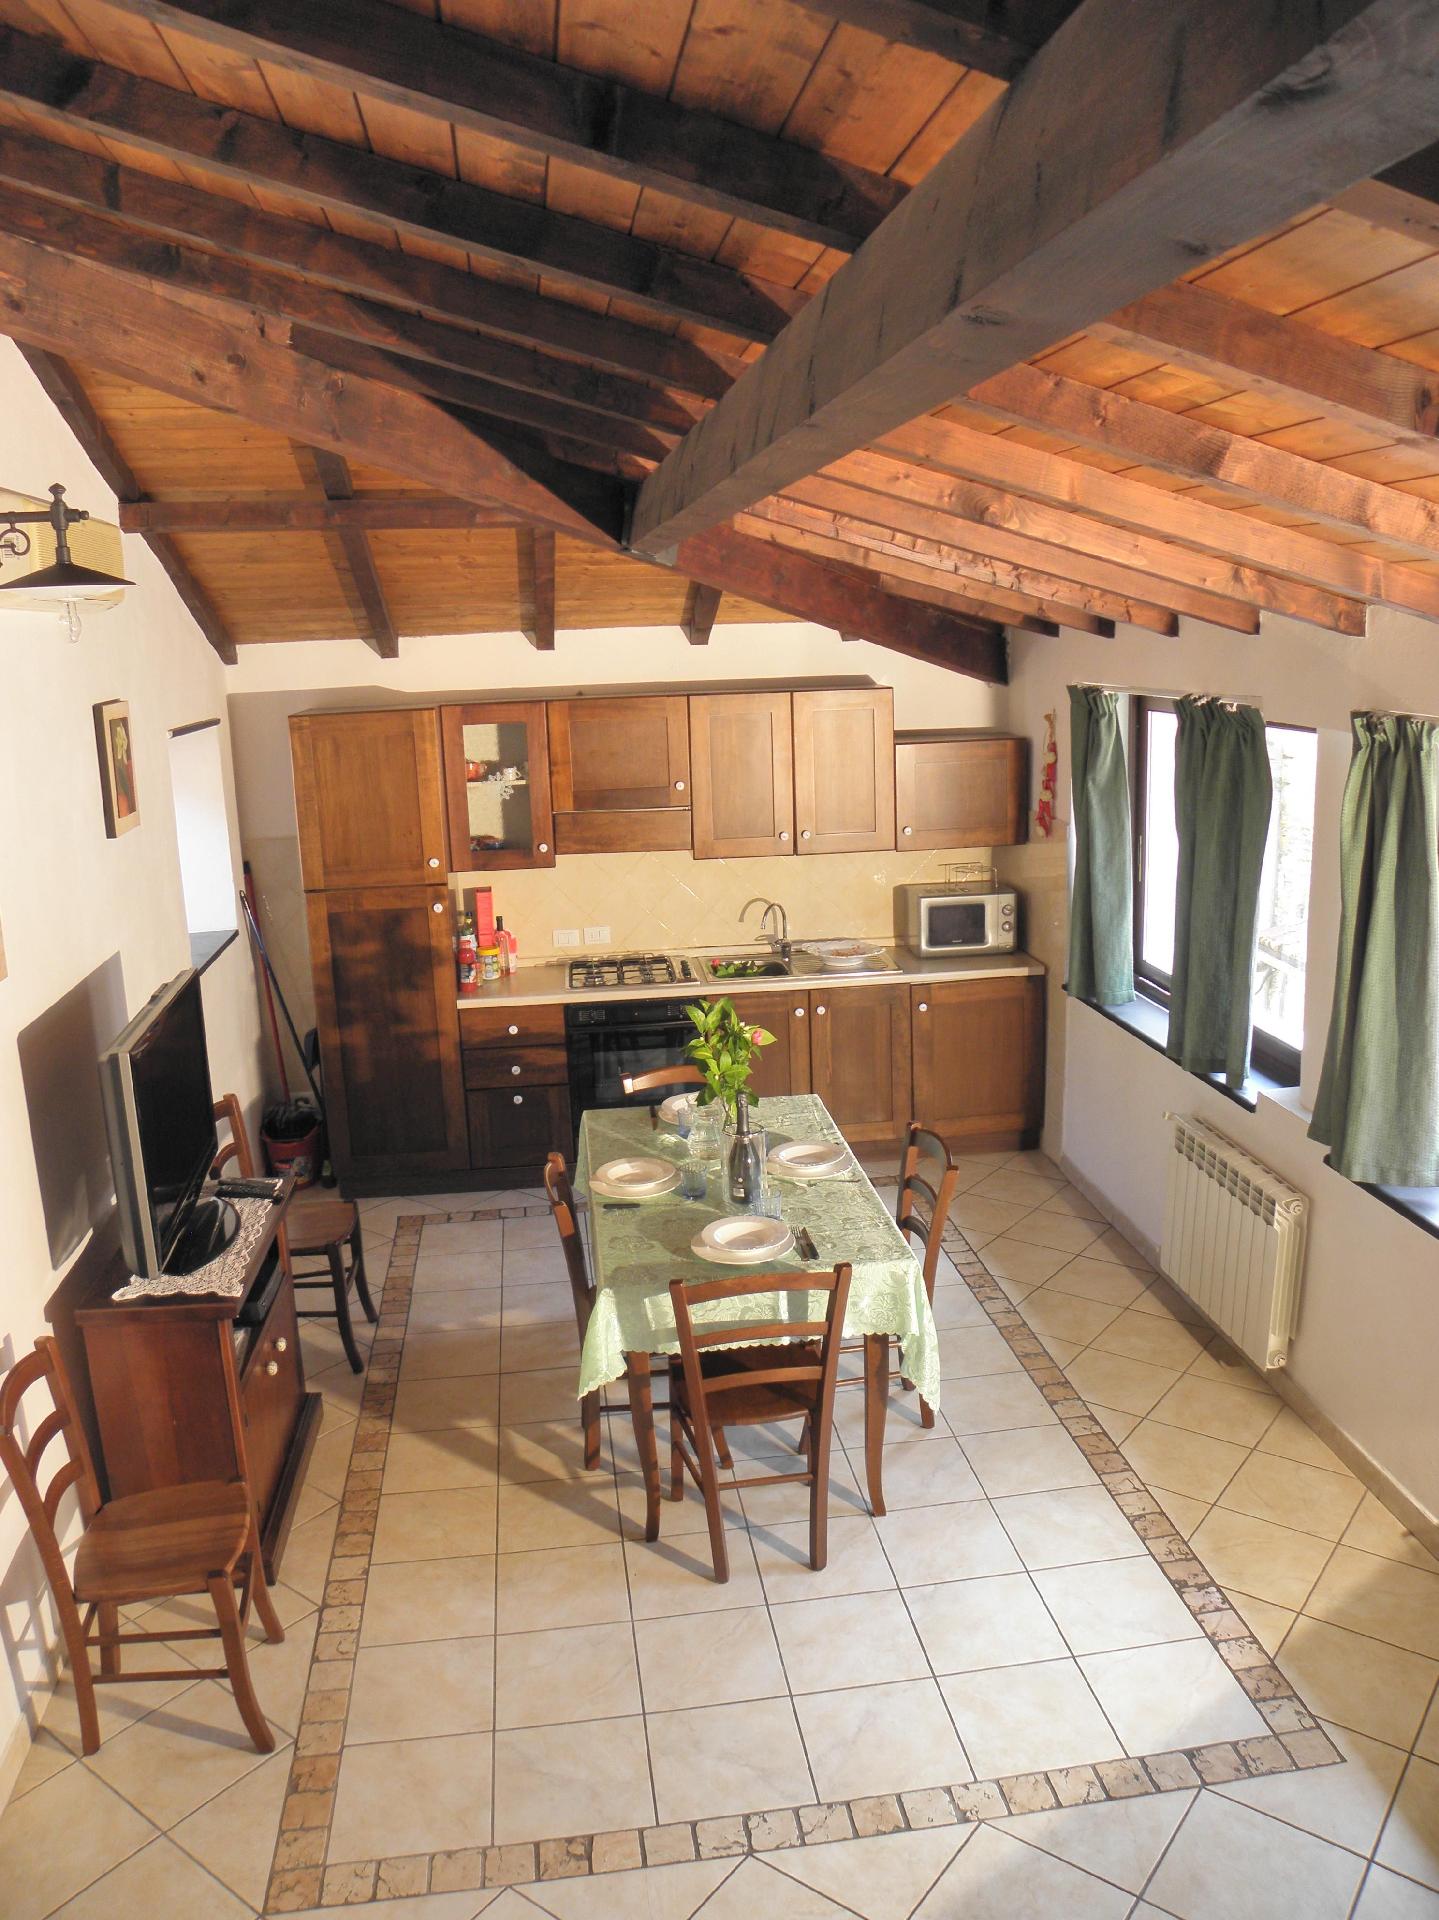 Ferienwohnung für 4 Personen ca. 68 m² i Ferienhaus in Italien